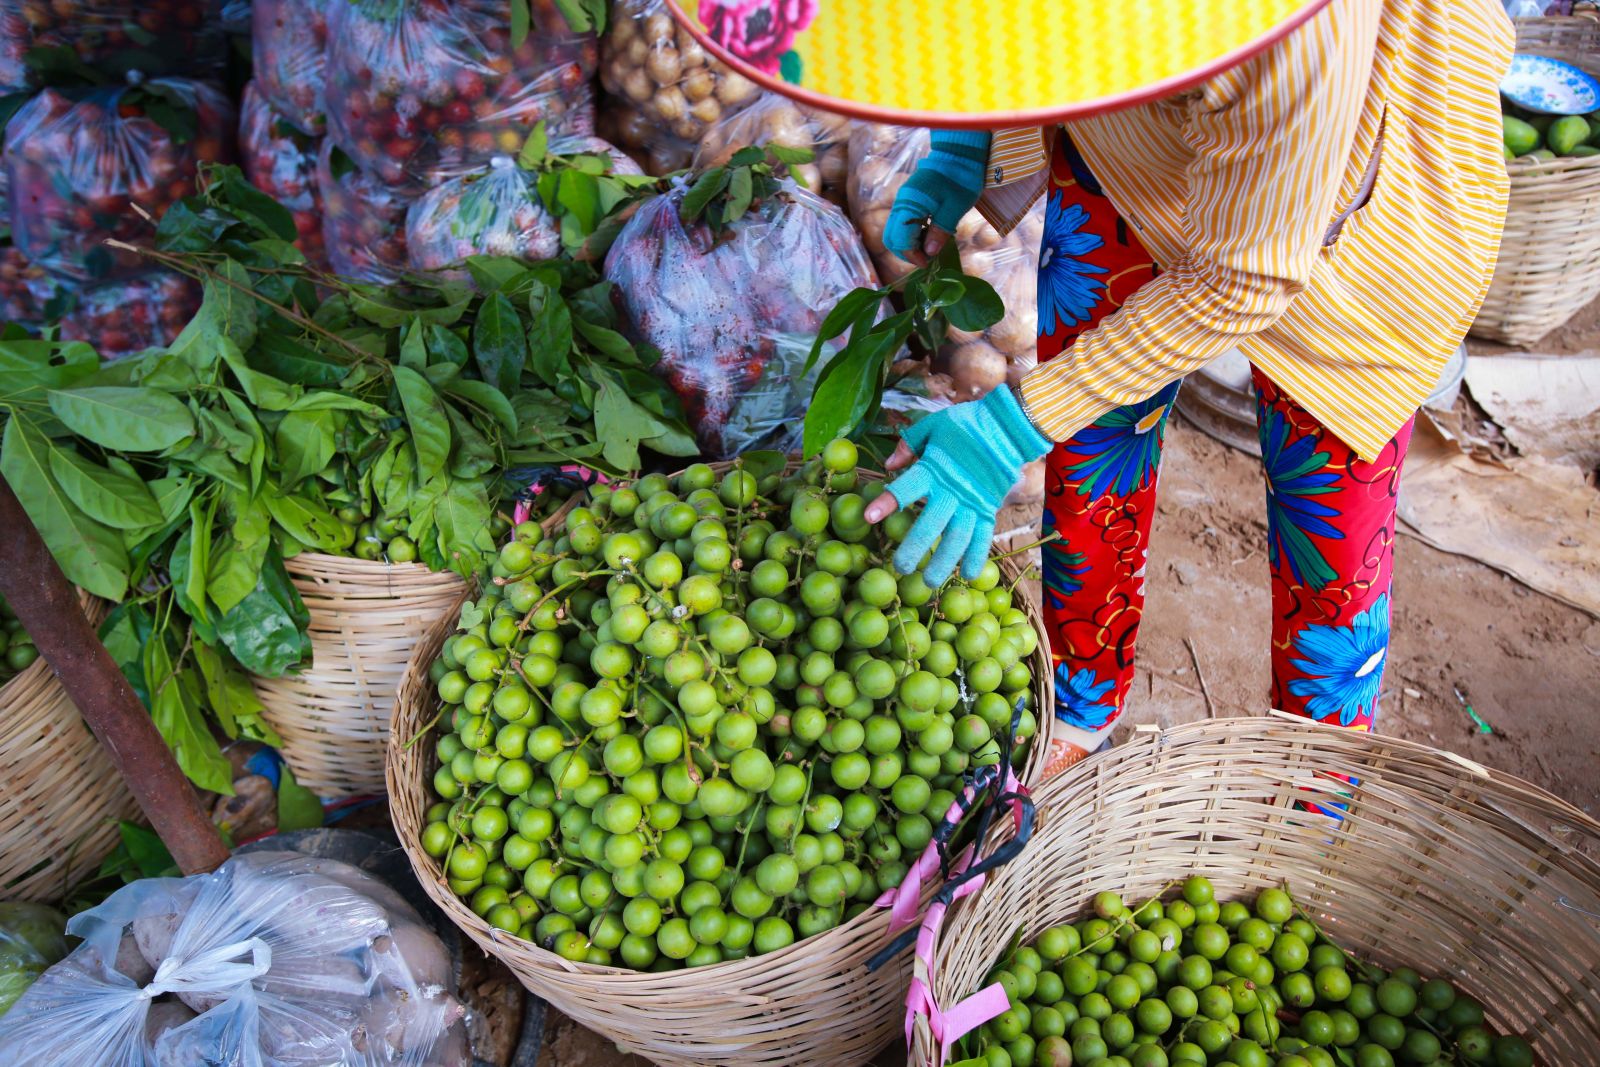 Chợ nổi Cà Mau là nơi hội tụ rất nhiều loại trái cây và sản vật miệt vườn như đu đủ, xoài, dừa nước, dưa gang, khế, bí, bầu, ổi, chôm chôm, khóm thơm (dứa), cà chua…